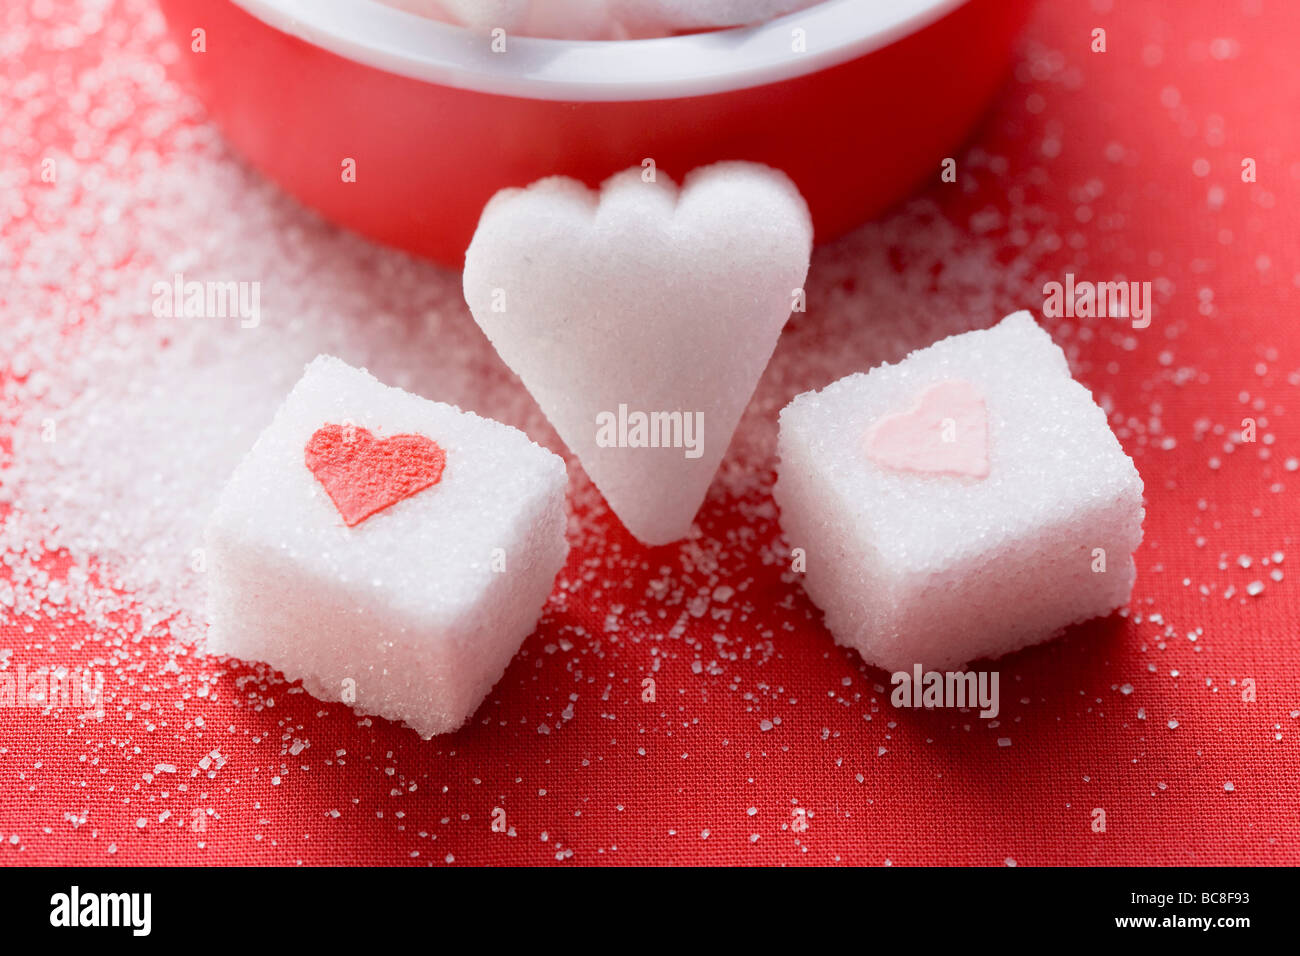 Zollette Di Zucchero A Forma Di Cuore E Con Il Cuore Foto Stock Alamy